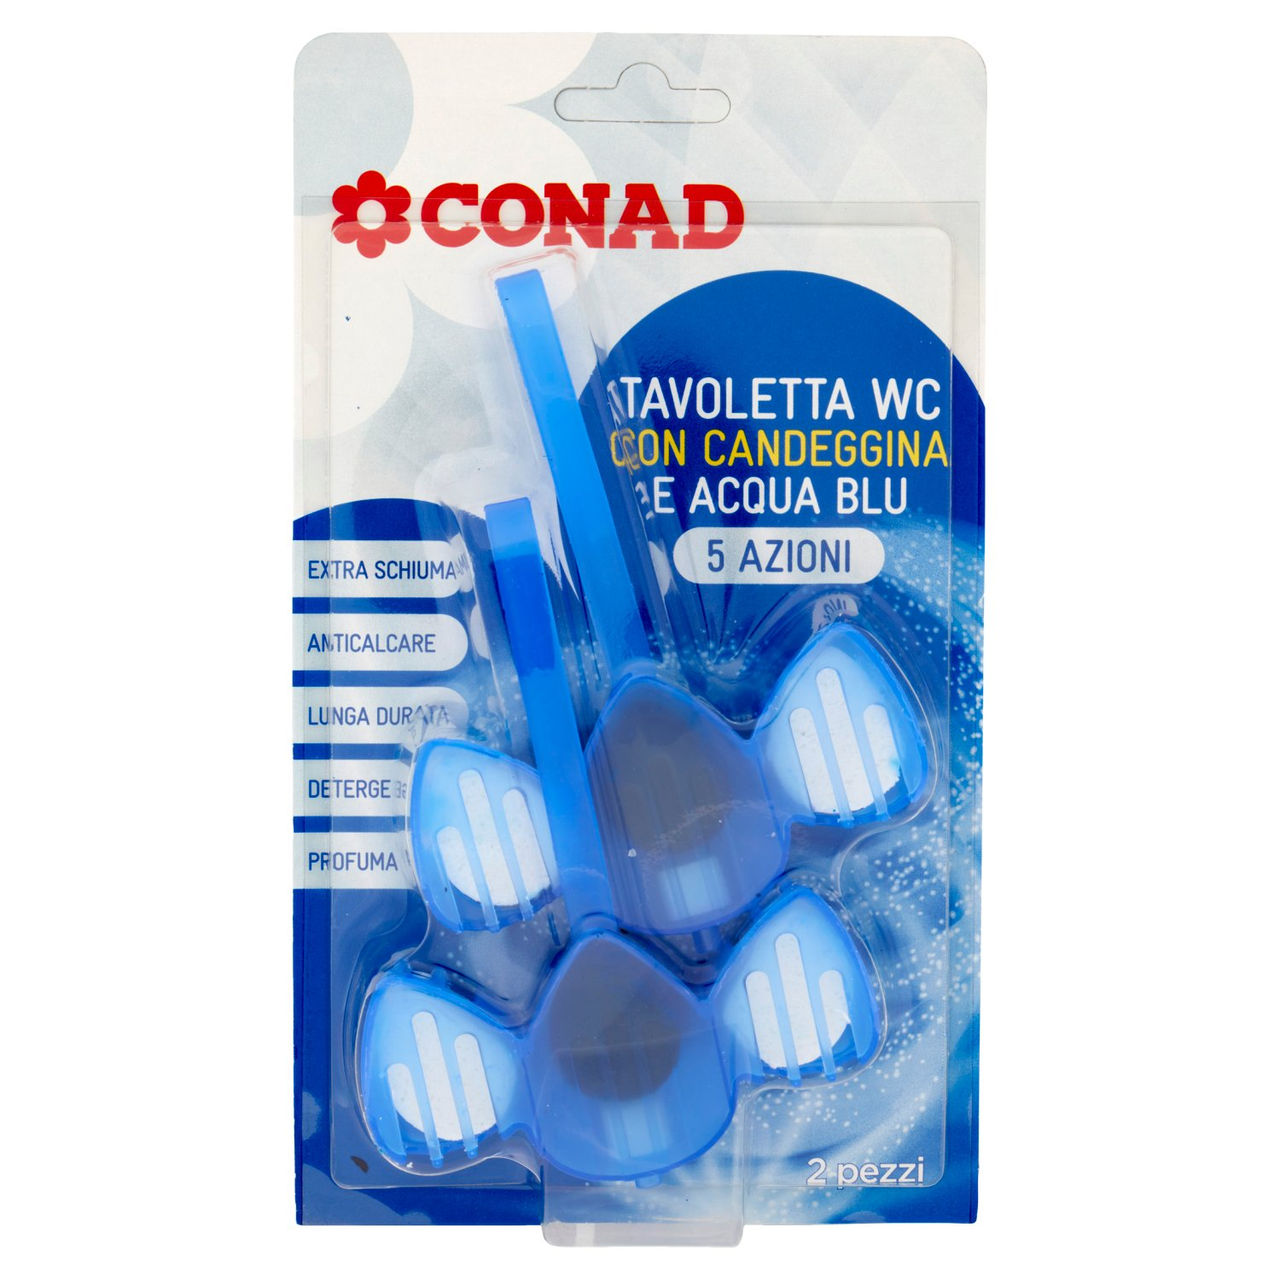 CONAD Tavoletta WC con Candeggina e Acqua Blu 5 Azioni 2 x 33 g